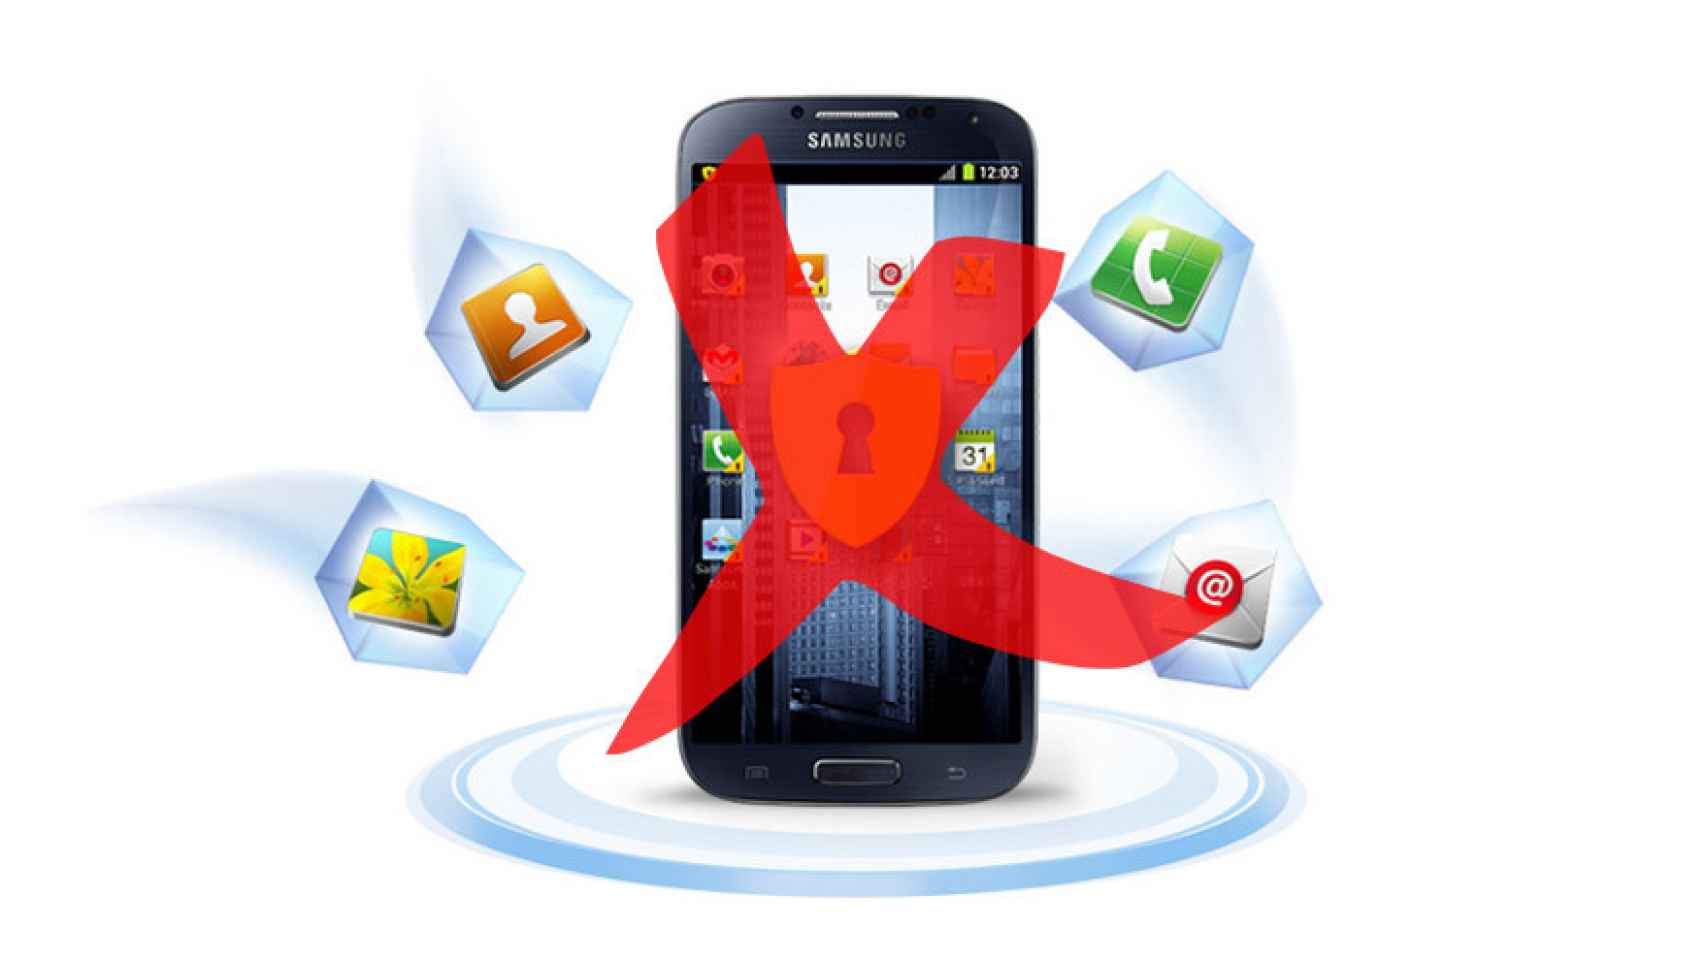 Un fallo de seguridad deja desprotegidos los dispositivos Samsung